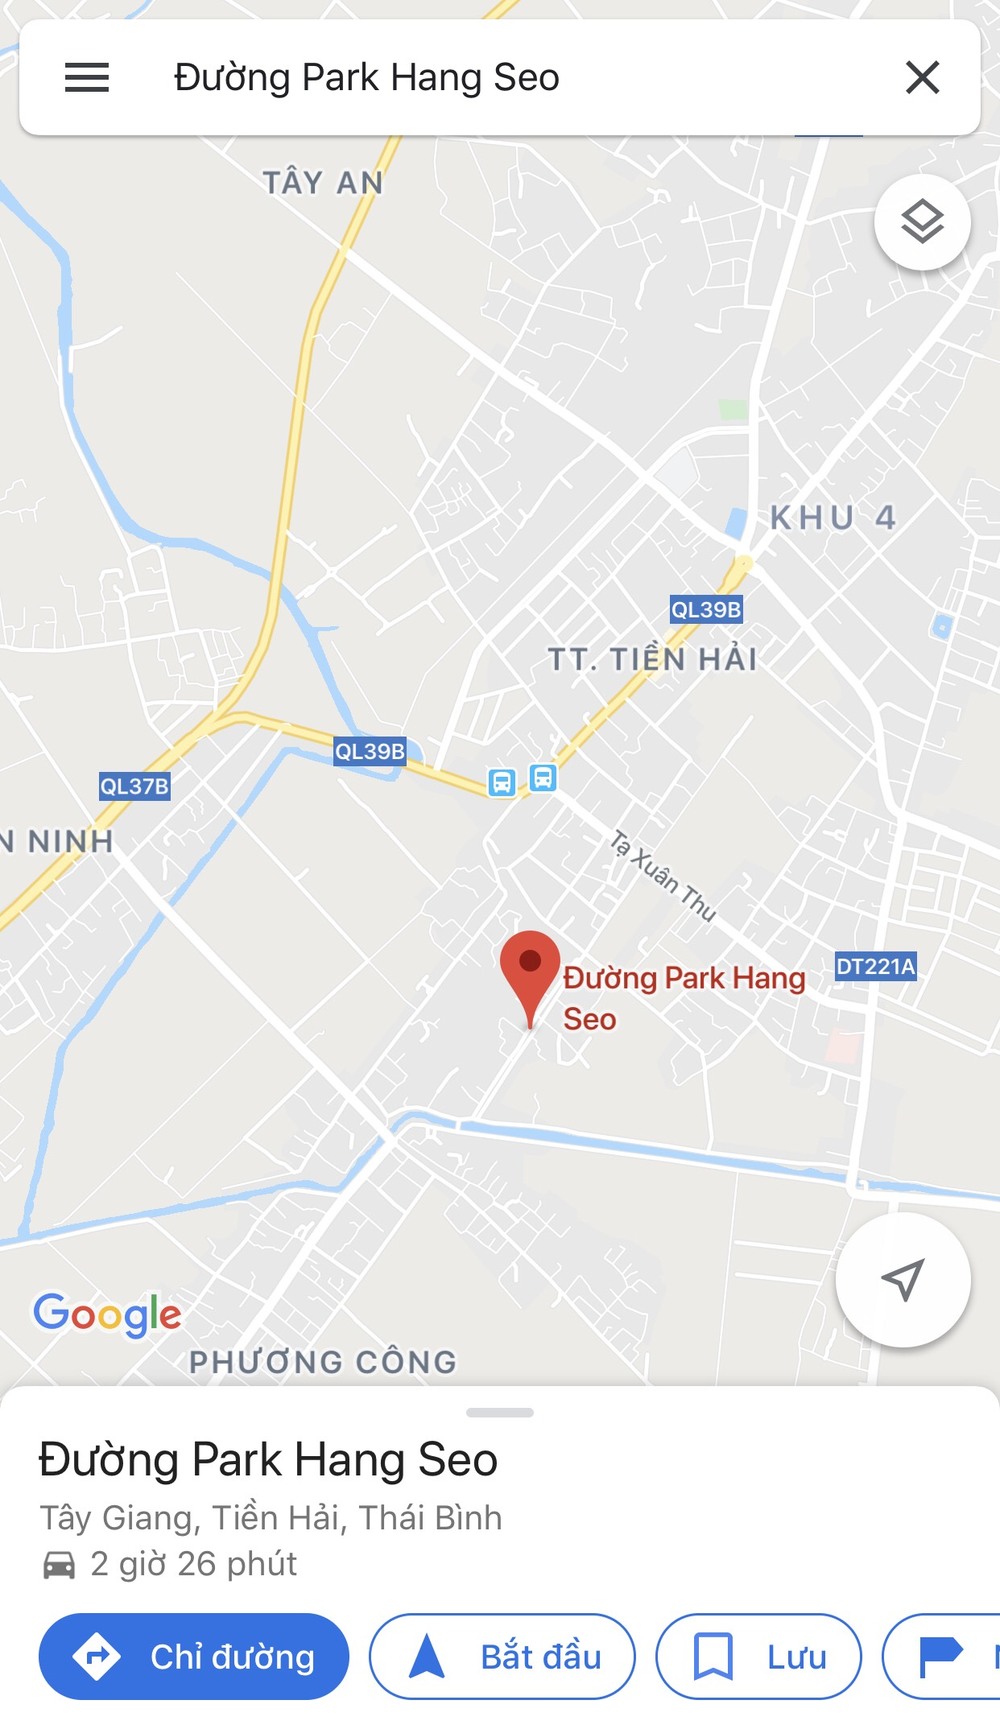  
Một bất ngờ khác khi tìm kiếm đường Park Hang Seo trên Google Maps thì bất ngờ cho ra kết quả thực sự có con đường này tại Thái Bình. (Ảnh: Chụp màn hình)